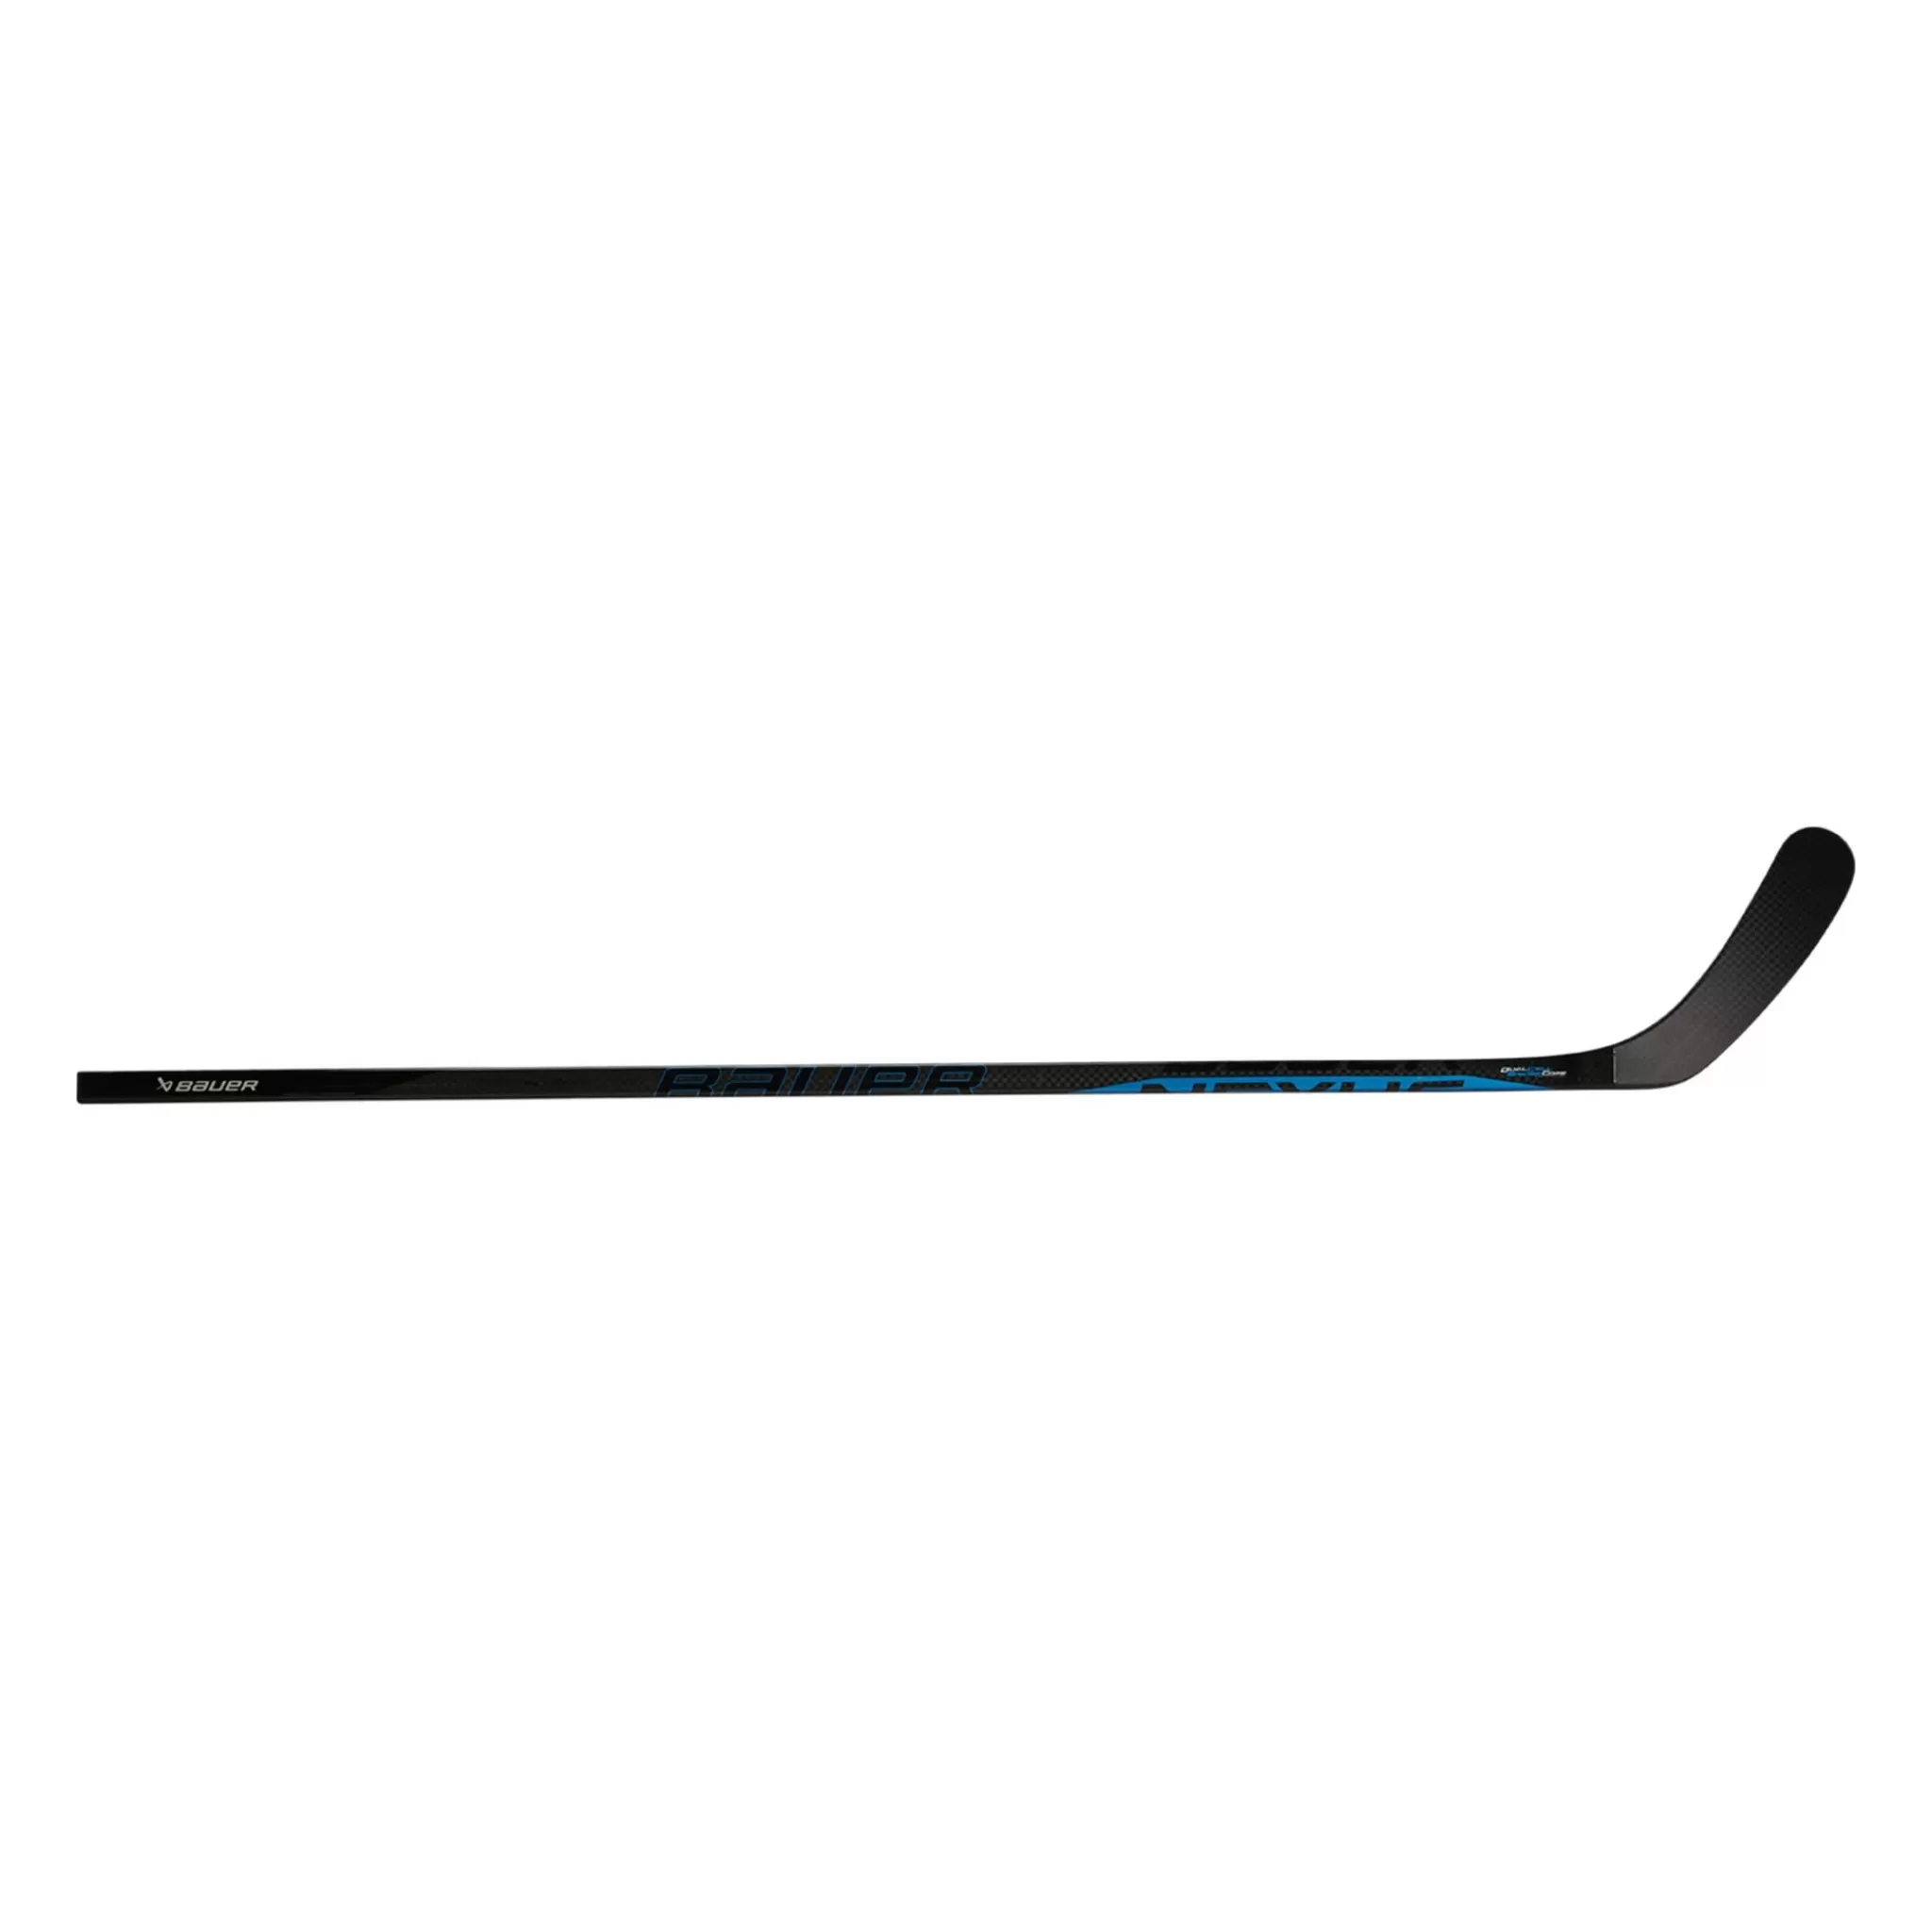 Store bauer S22 Nexus E5 Pro Grip Stk-Int-22/23, Hockeykolle Intermediate